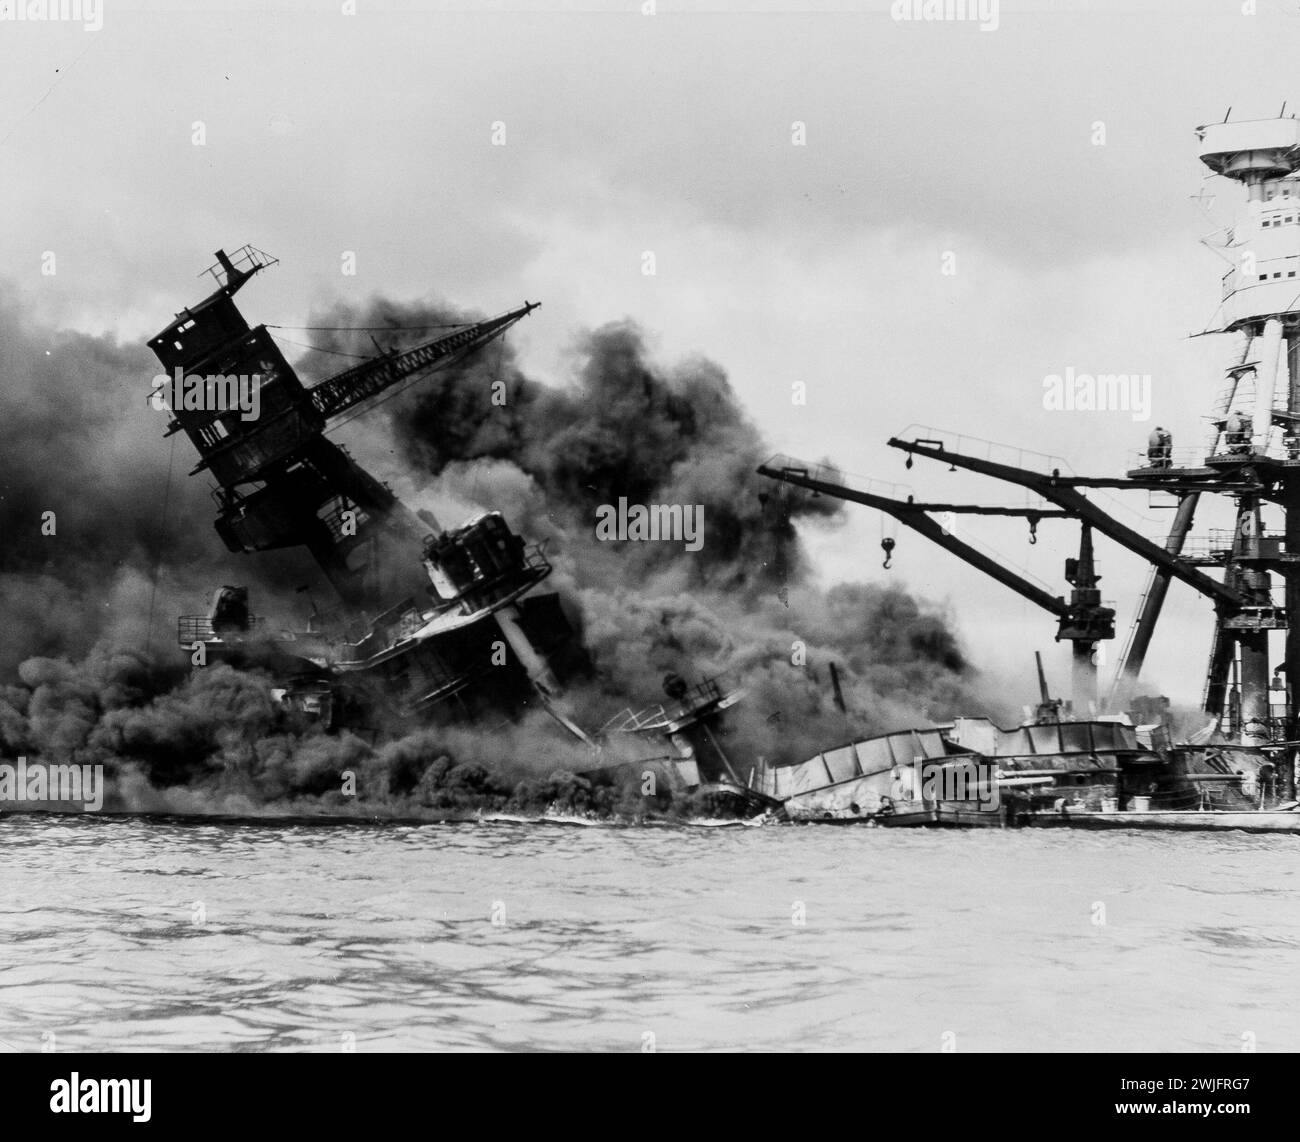 Seconde Guerre mondiale - attaque de 1941 sur Pearl Harbor, décembre 1941 - cuirassé USS Arizona Burning - photographie officielle de la marine américaine Banque D'Images